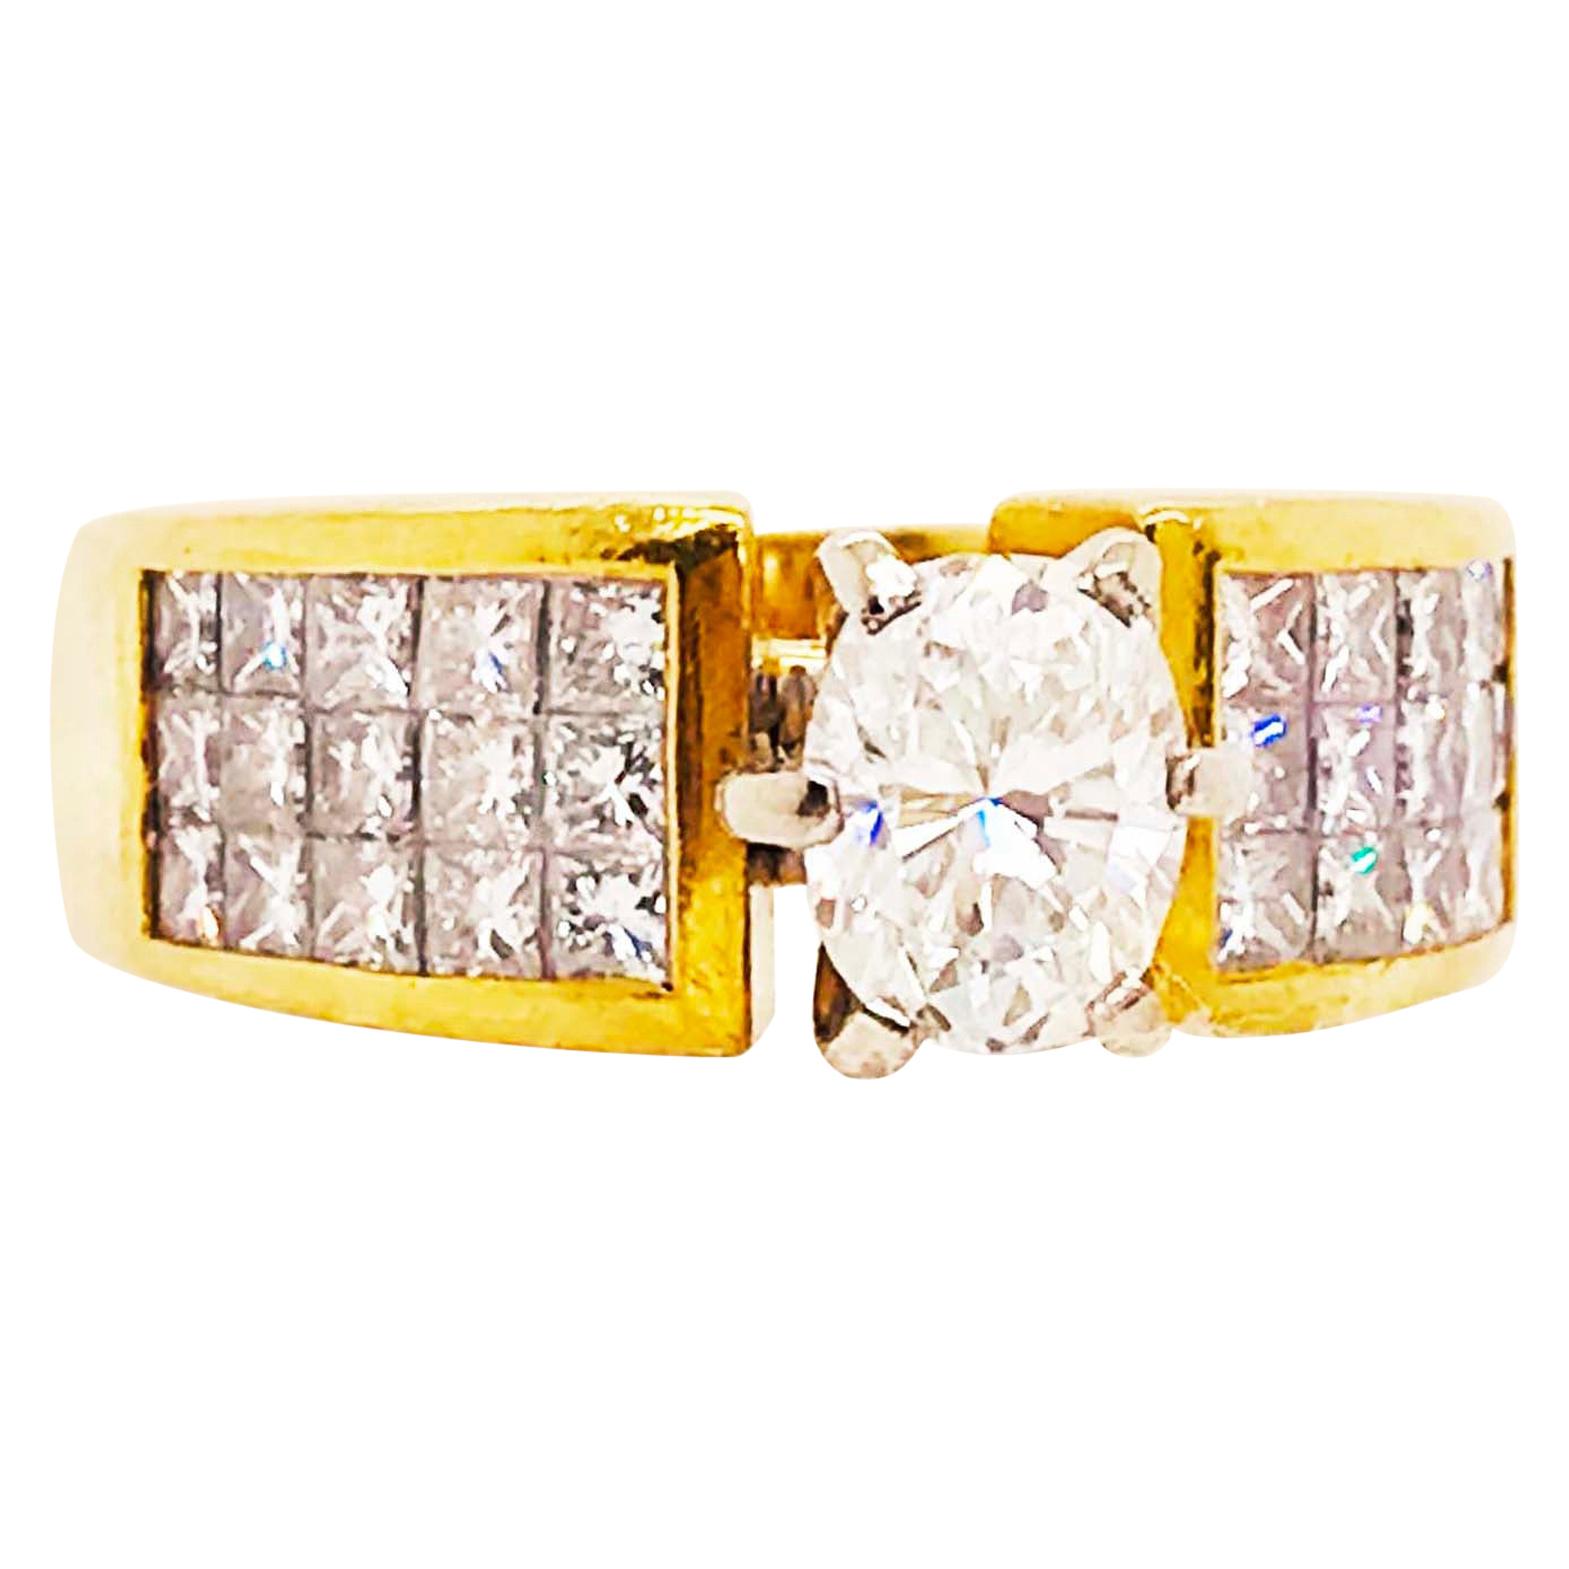 Oval Diamond Ring, 1.50 Carat with Princess Cut Diamond Band, 18 Karat Gold